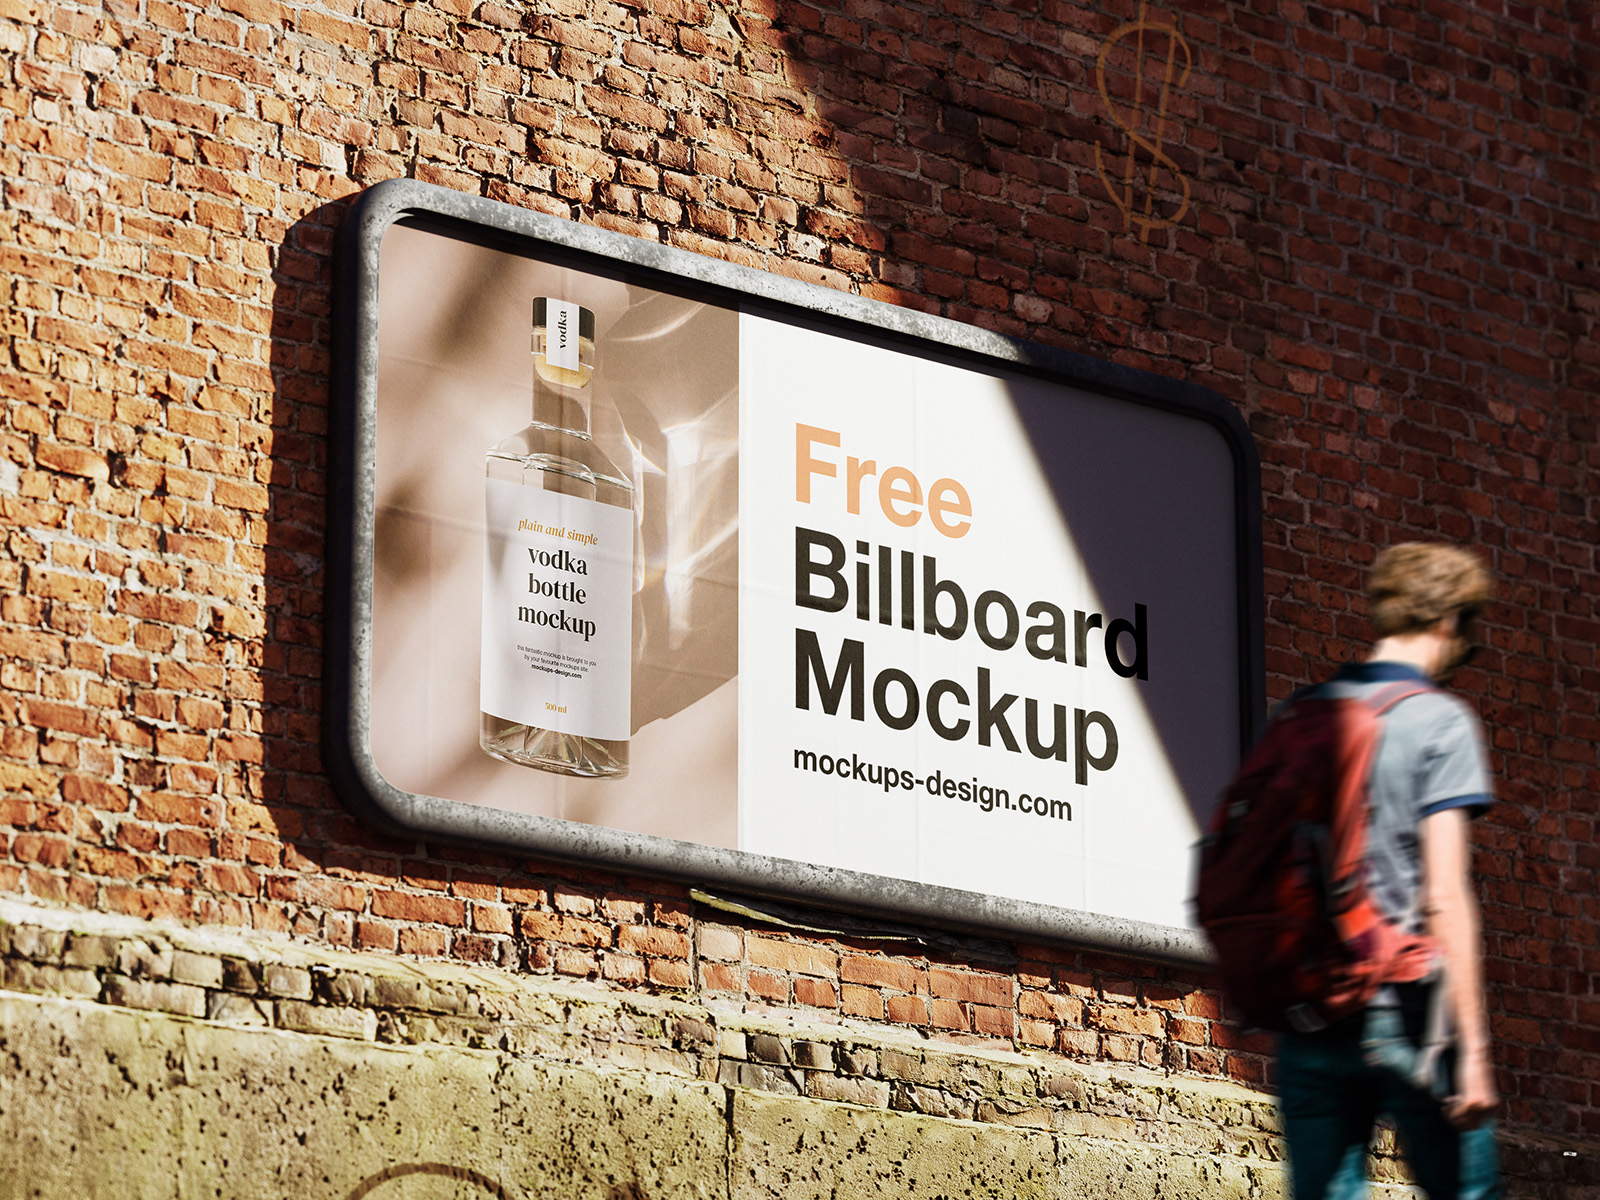 Street Billboard Mockup